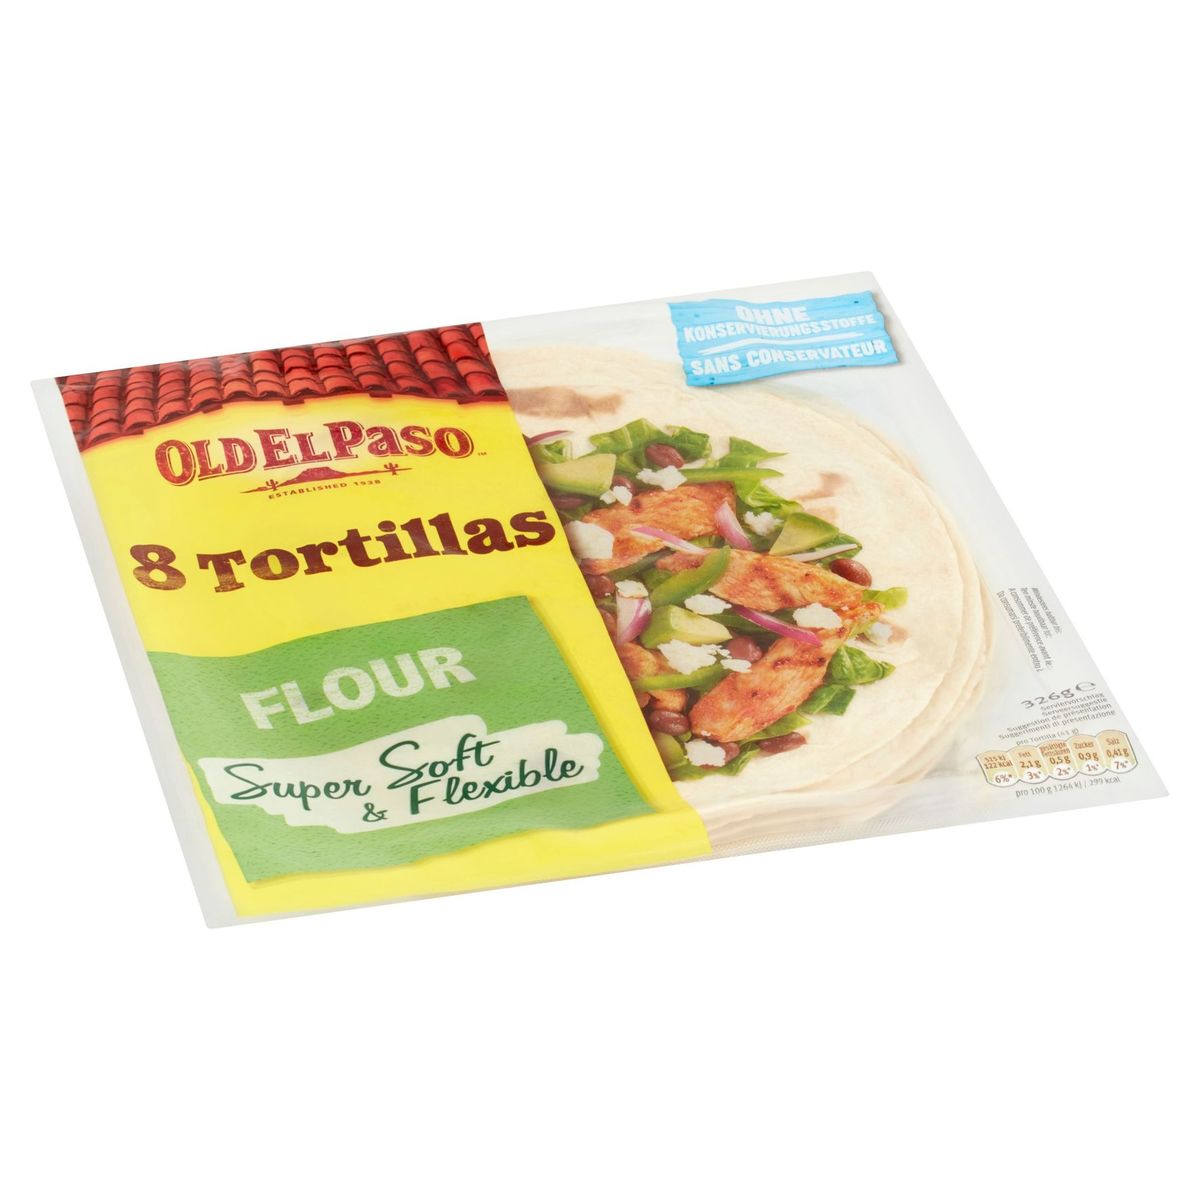 Old El Paso 8 Tortillas Flour 326 g